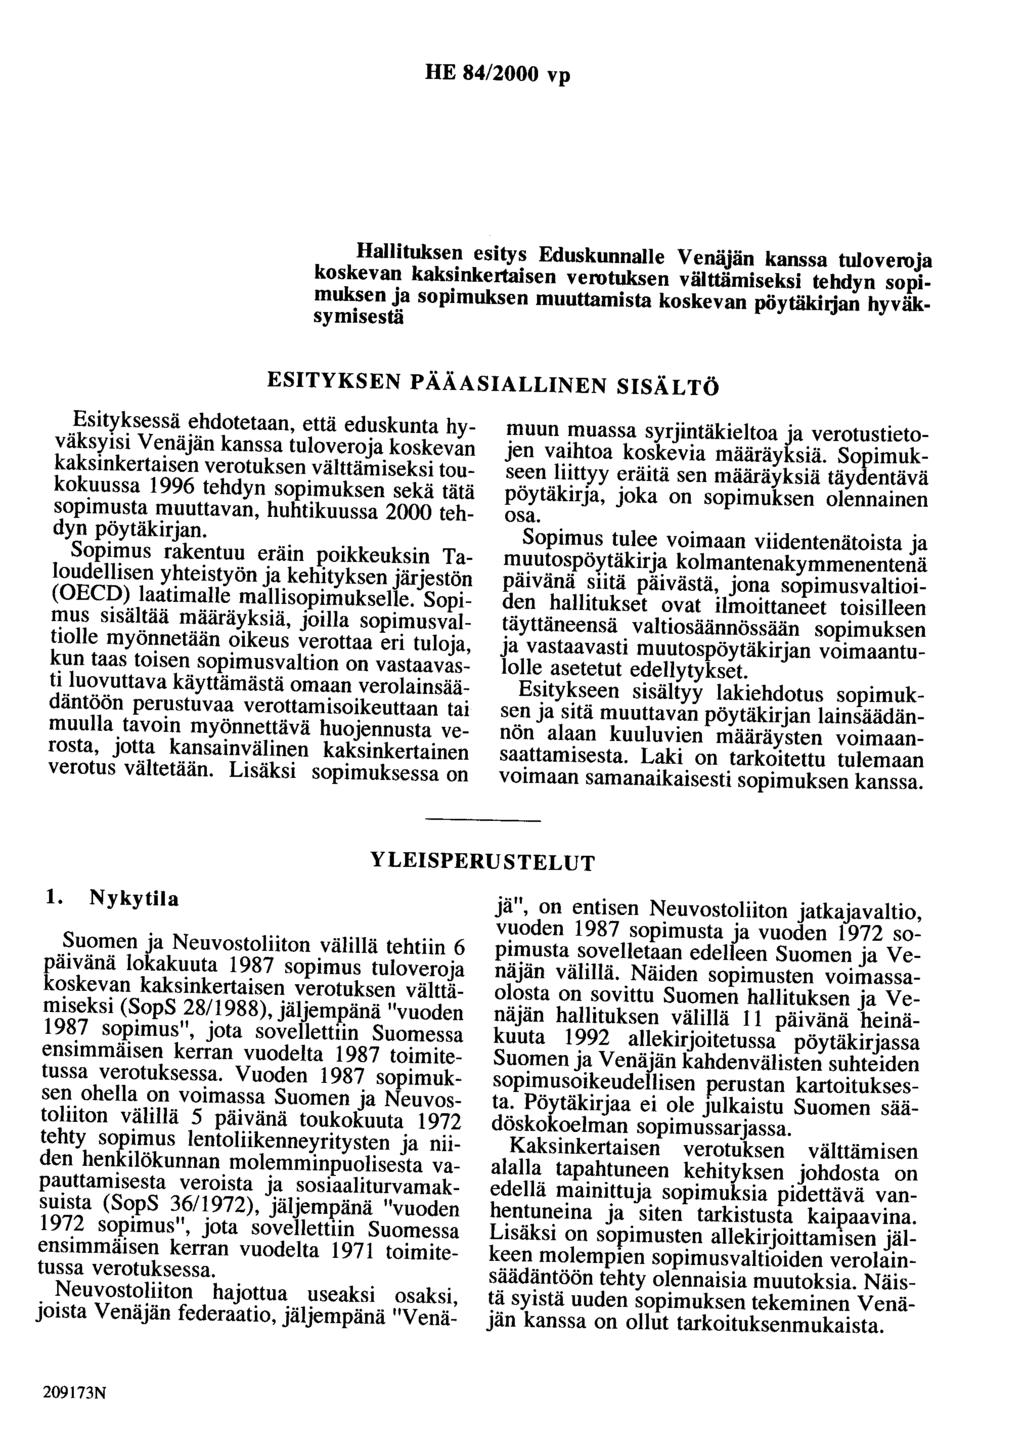 HE 84/2000 vp Hallituksen esitys Eduskunnalle Venäjän kanssa tuloveroja koskevan kaksinkertaisen verotuksen välttämiseksi tehdyn sopimuksen ja sopimuksen muuttamista koskevan pöytäkiijan